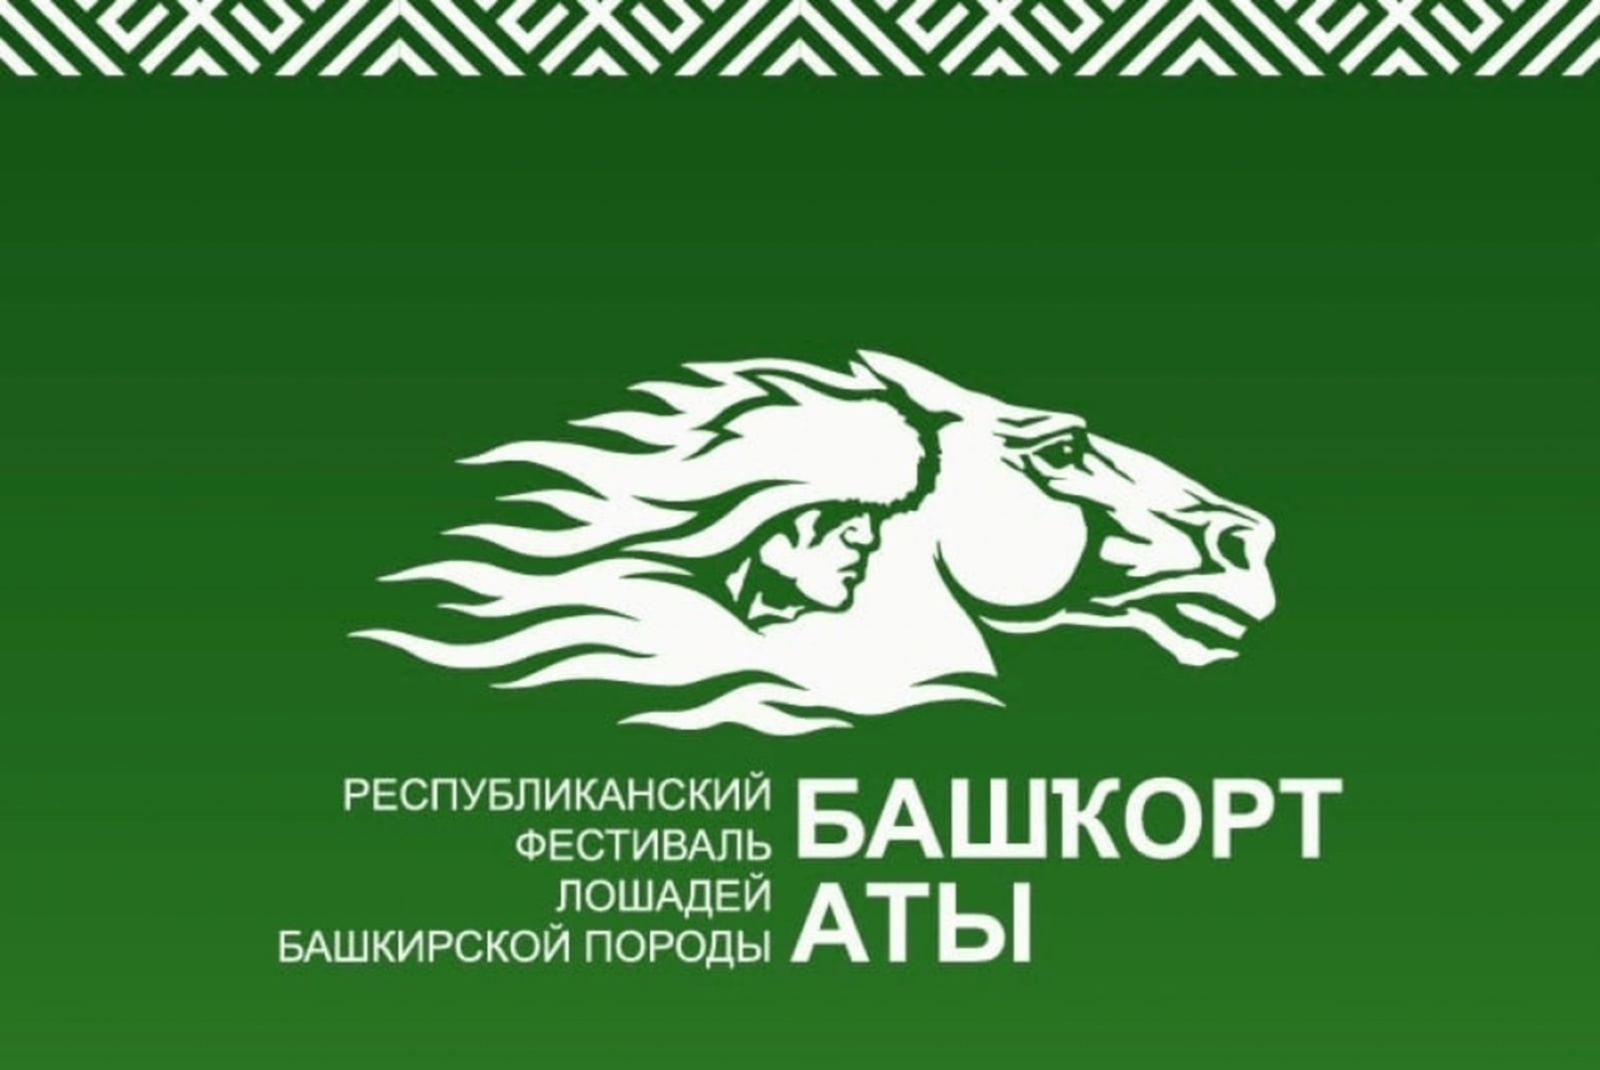 11–13 августа в Башкирии состоится международный фестиваль "Башкирская лошадь"